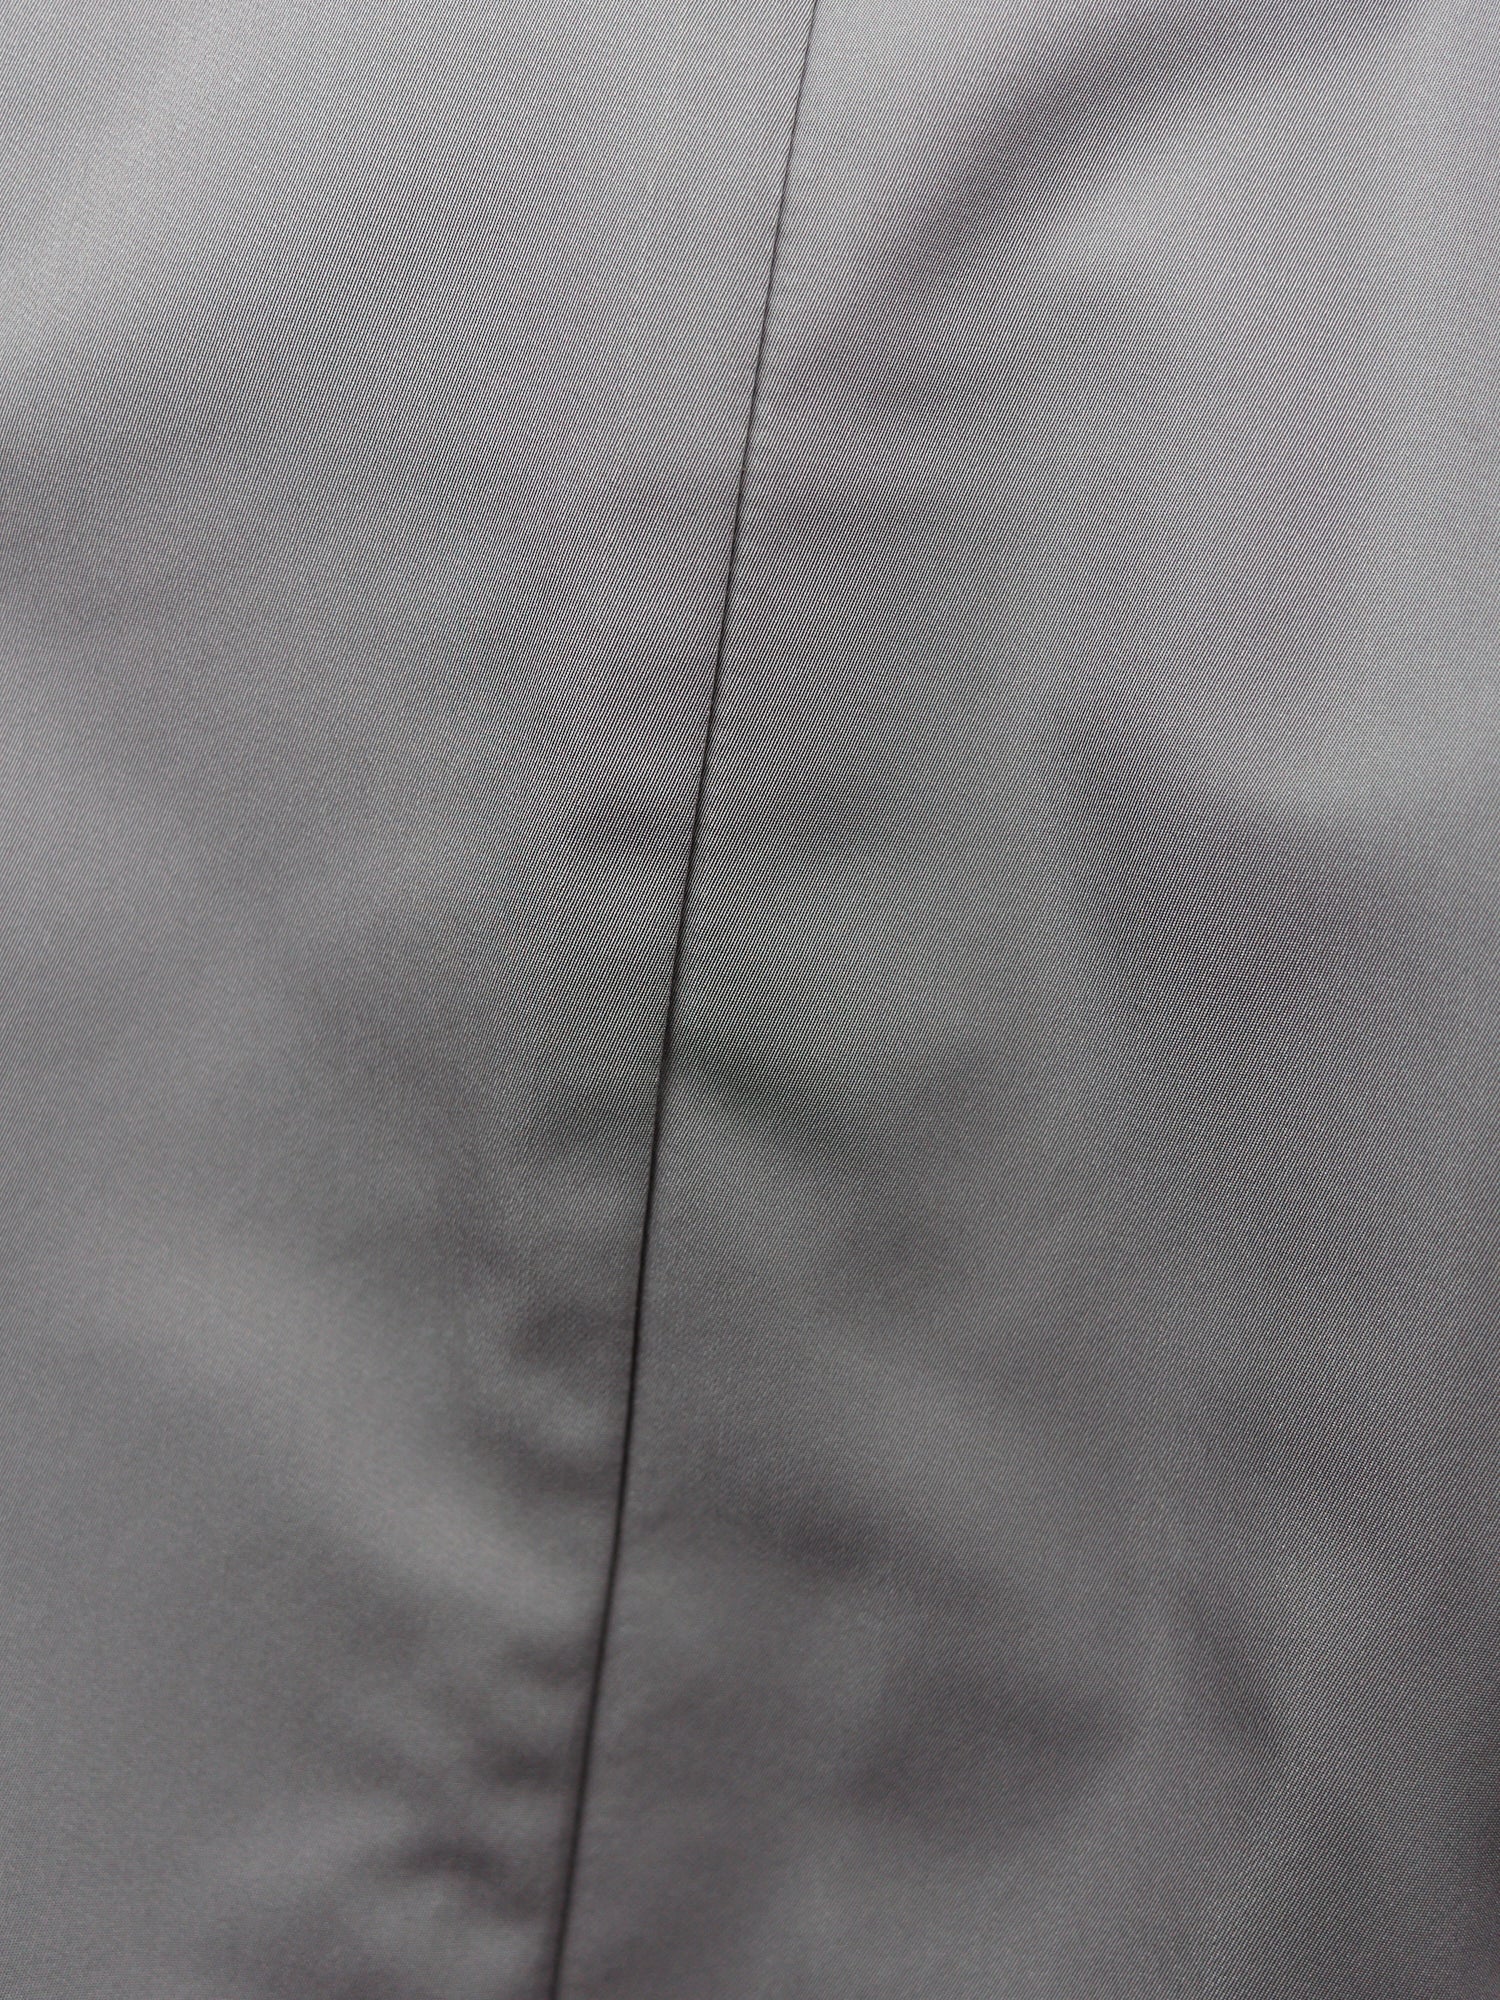 Jil Sander silver gray poly silk 4 button coat - womens 34 36 / mens XXS XS